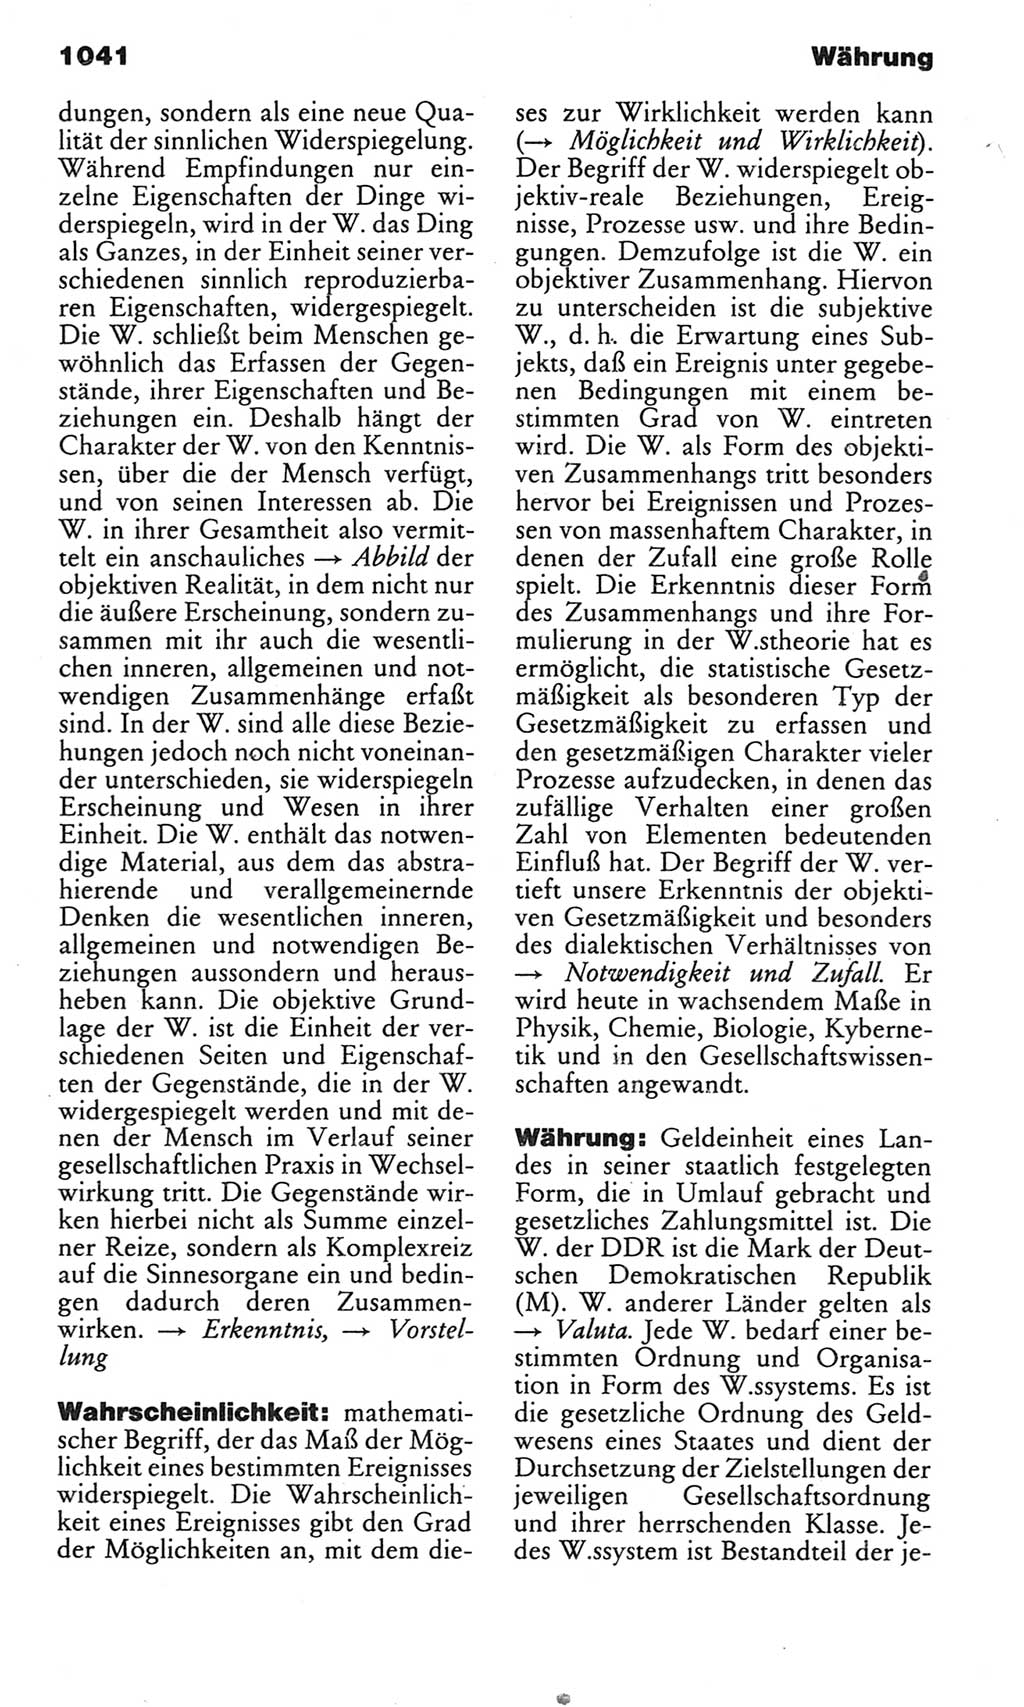 Kleines politisches Wörterbuch [Deutsche Demokratische Republik (DDR)] 1983, Seite 1041 (Kl. pol. Wb. DDR 1983, S. 1041)